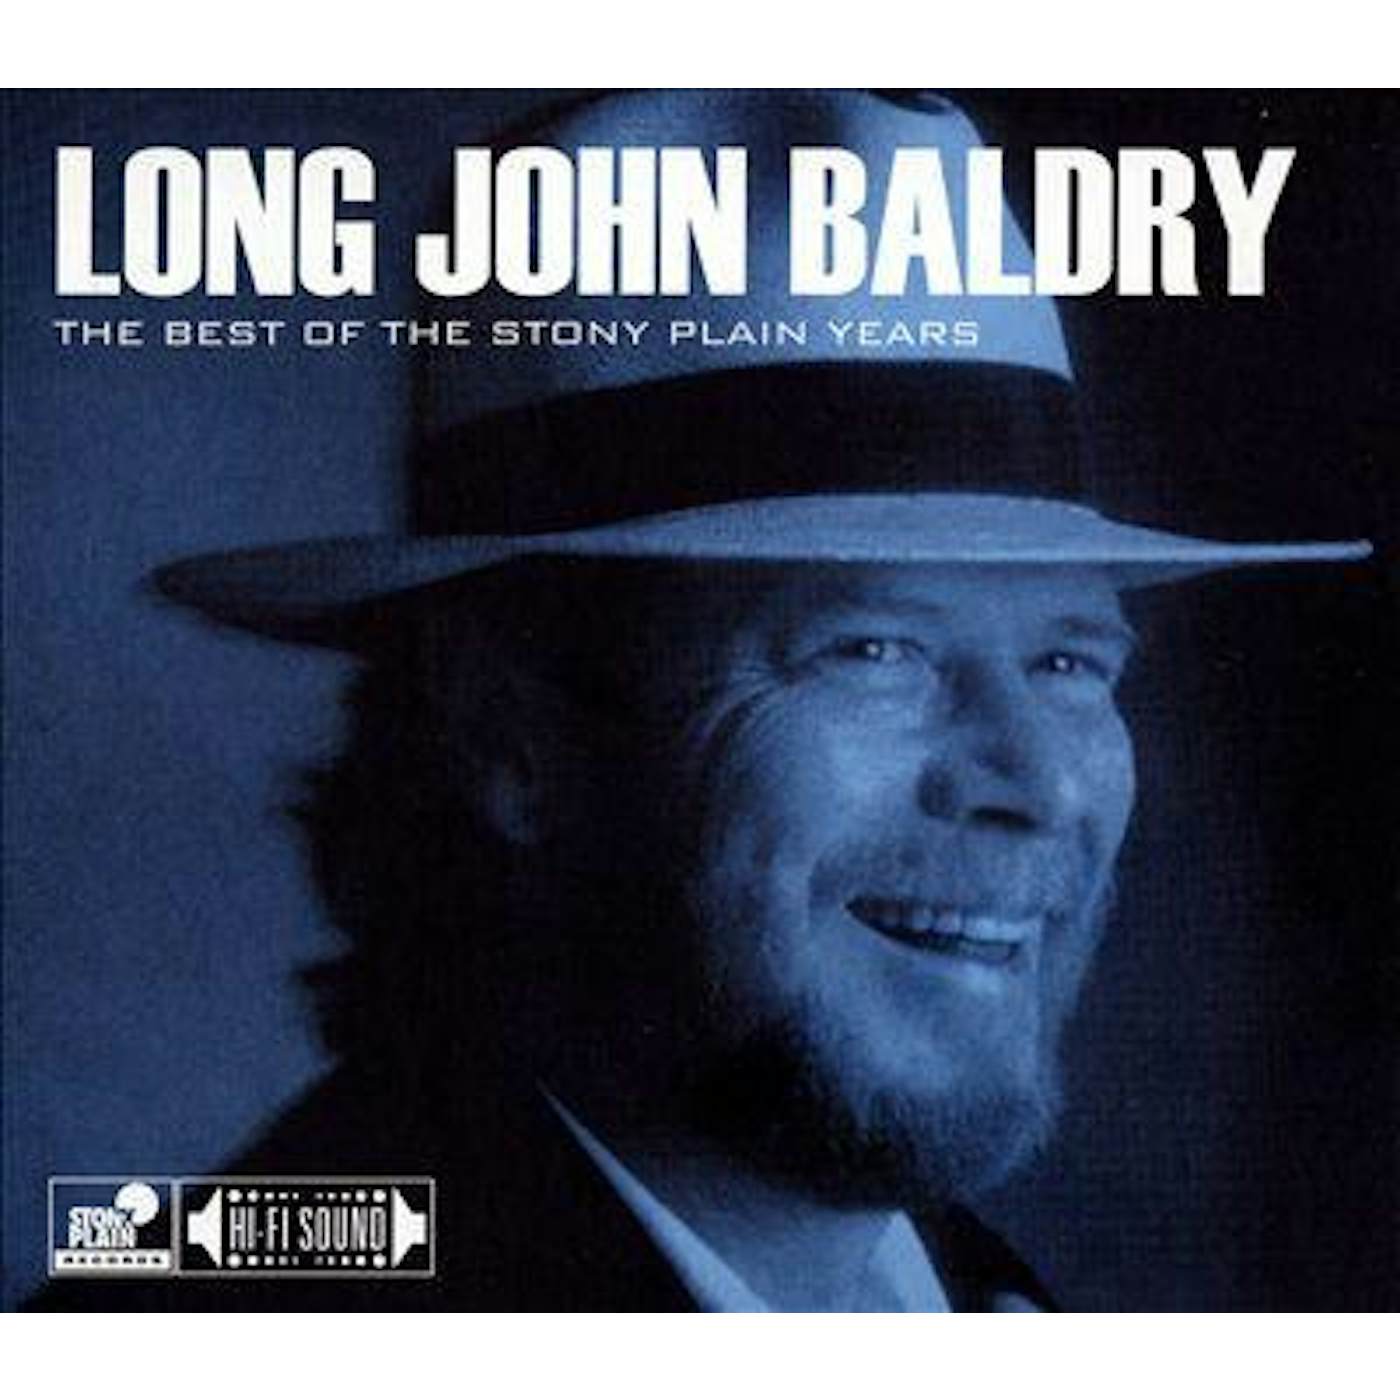 Long John Baldry BEST OF THE STONY PLAIN YEARS CD